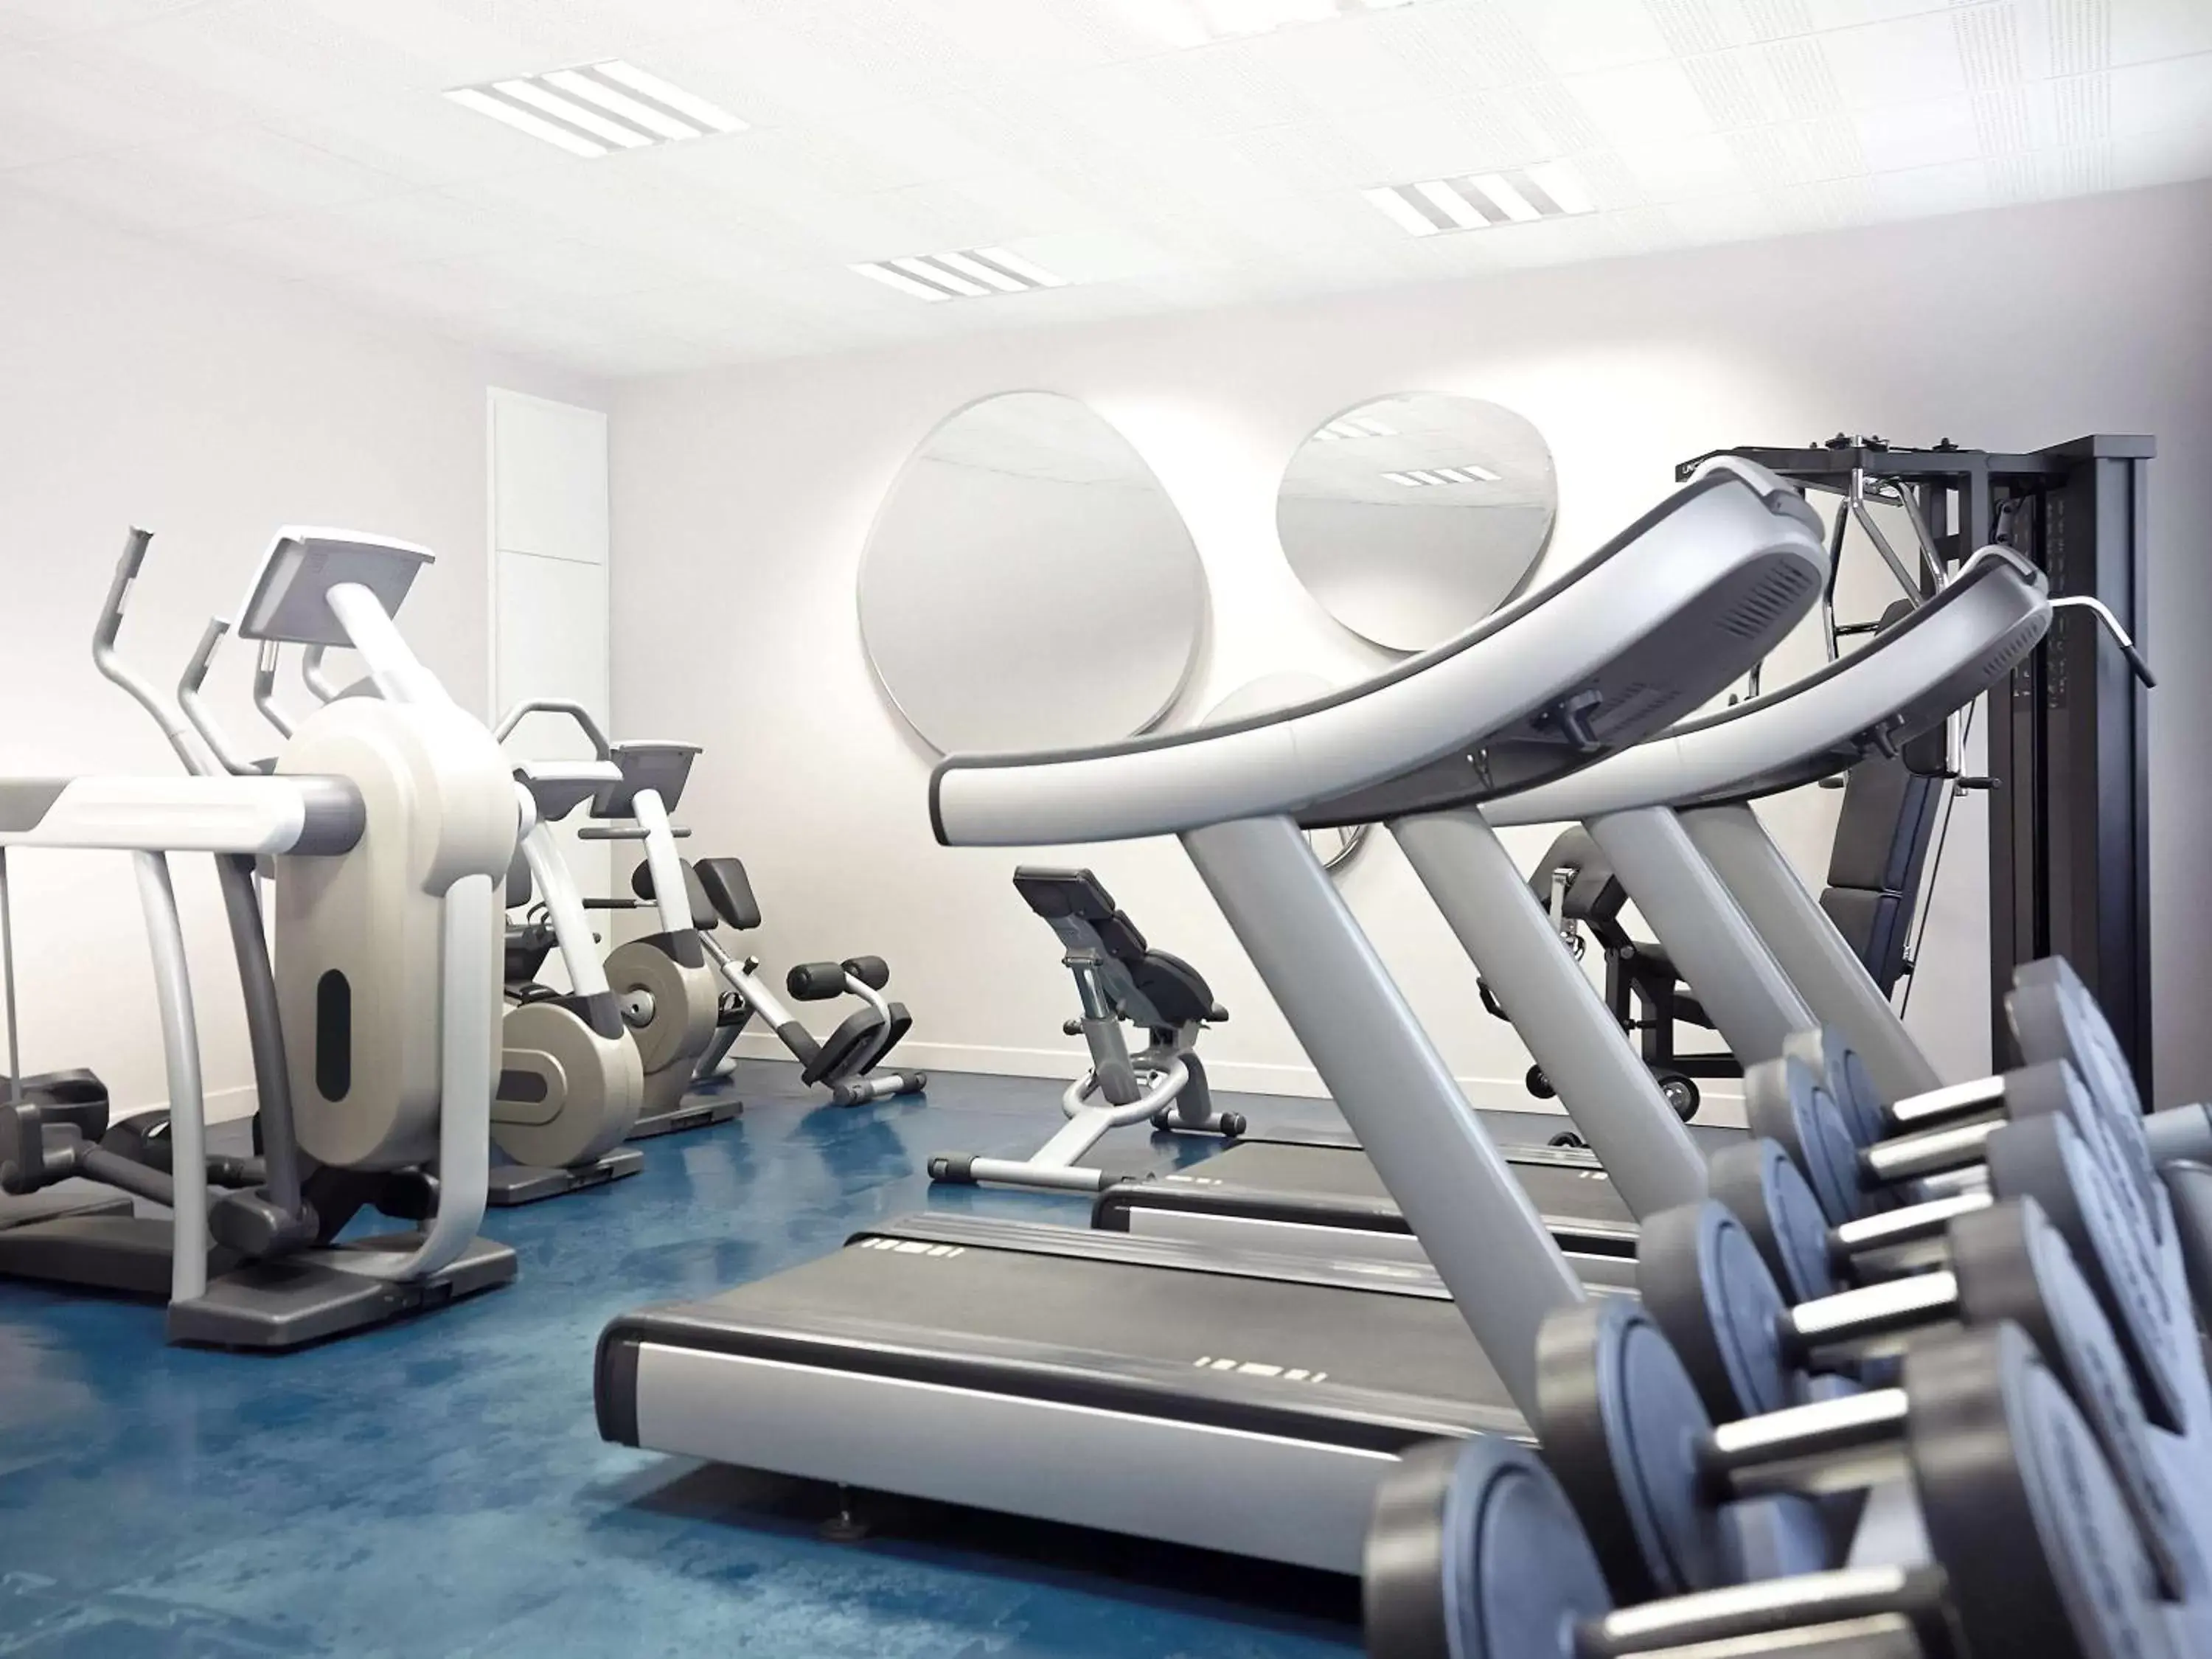 Fitness centre/facilities, Fitness Center/Facilities in Novotel Avignon Centre